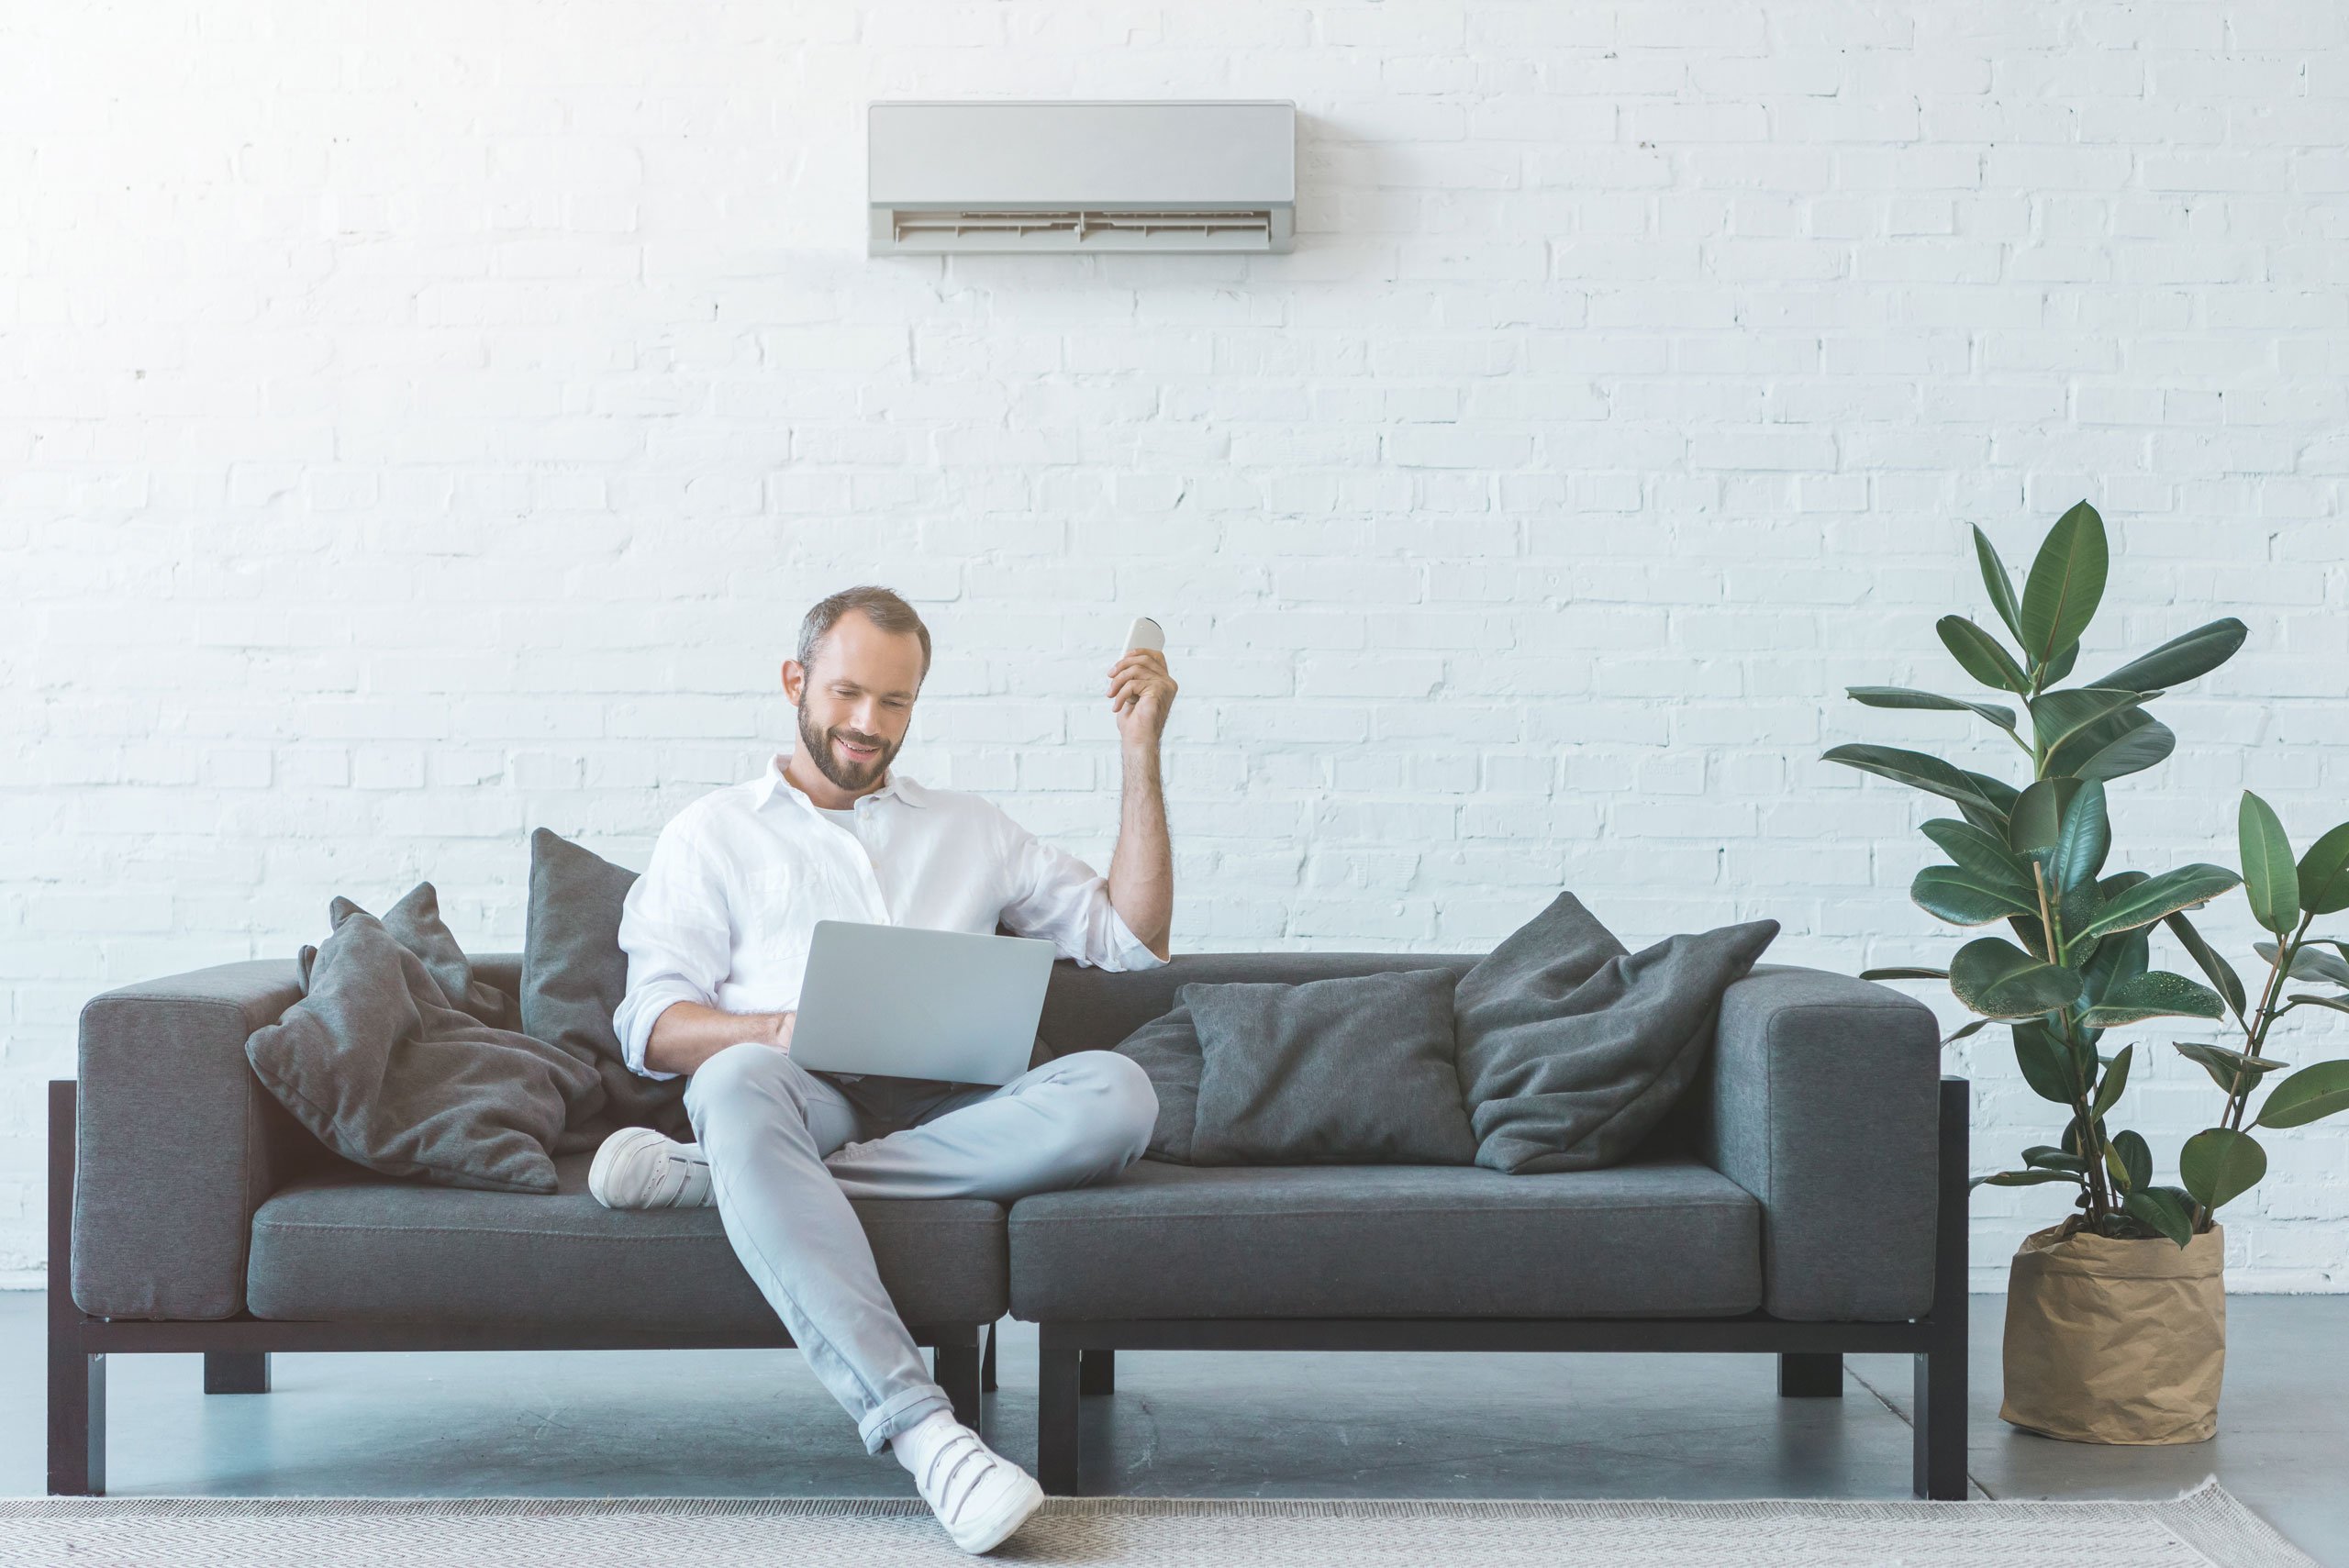 Thermopompe ou climatiseur : comment faire le bon choix?